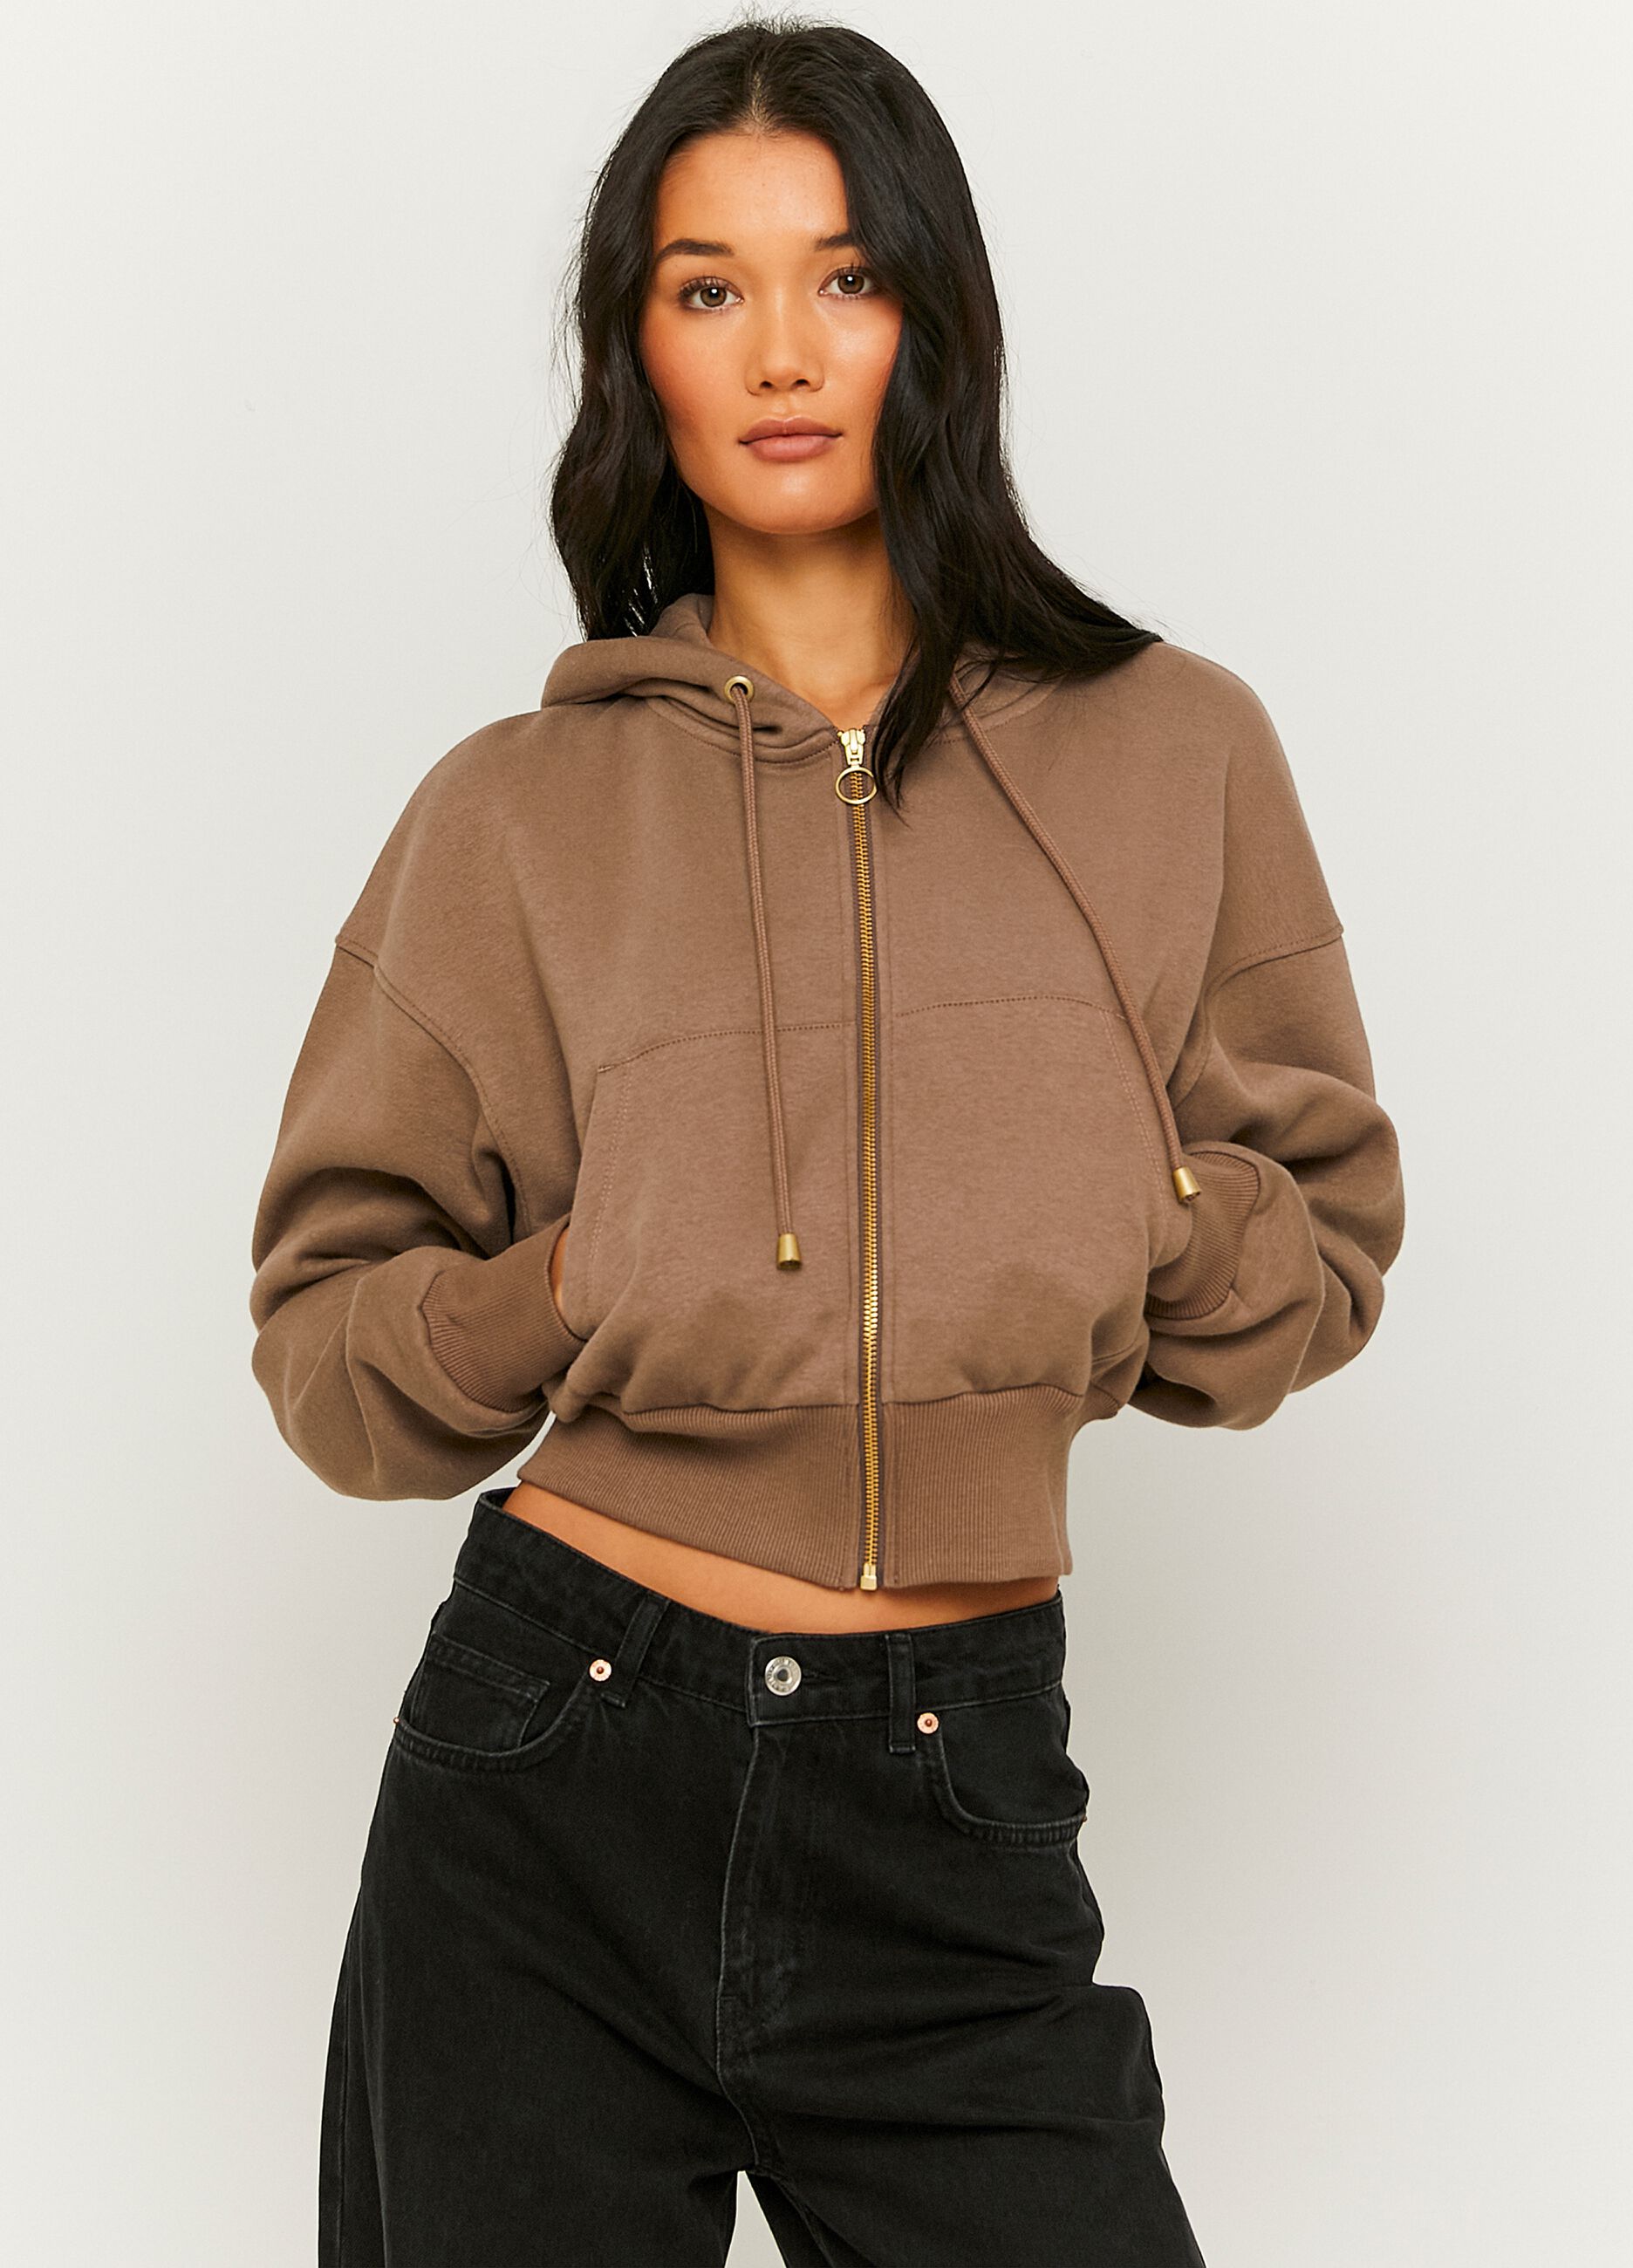 Crop sweatshirt with hood and zip